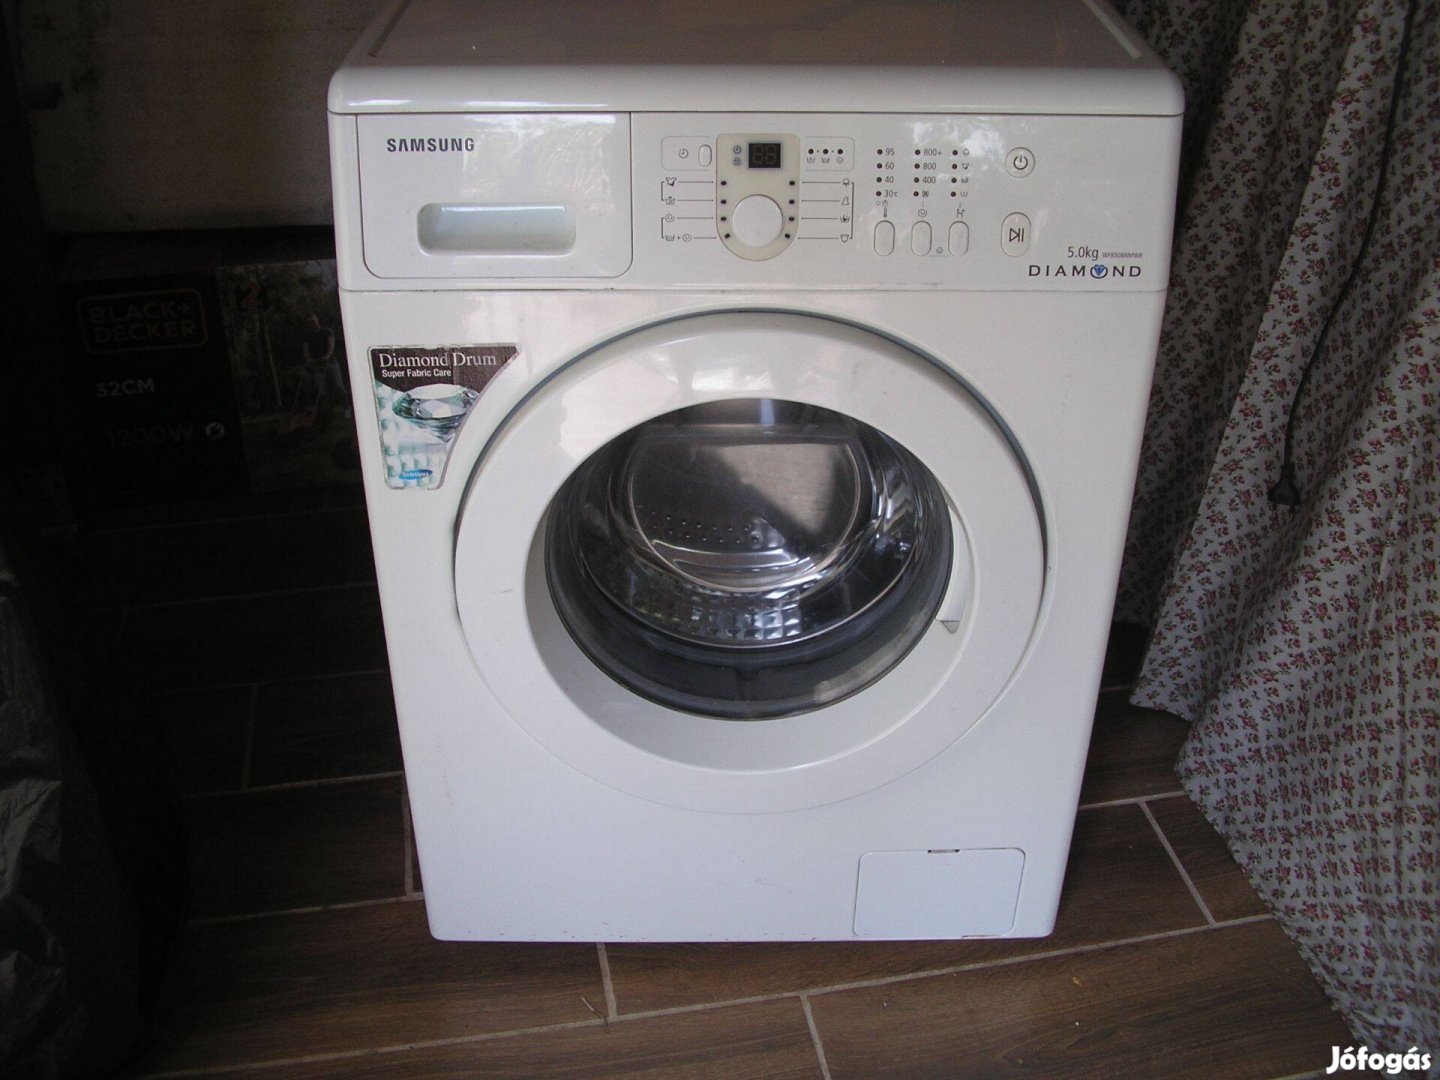 Samsung mosógép, szép állapot 5kg mosás, vezérlője hibás